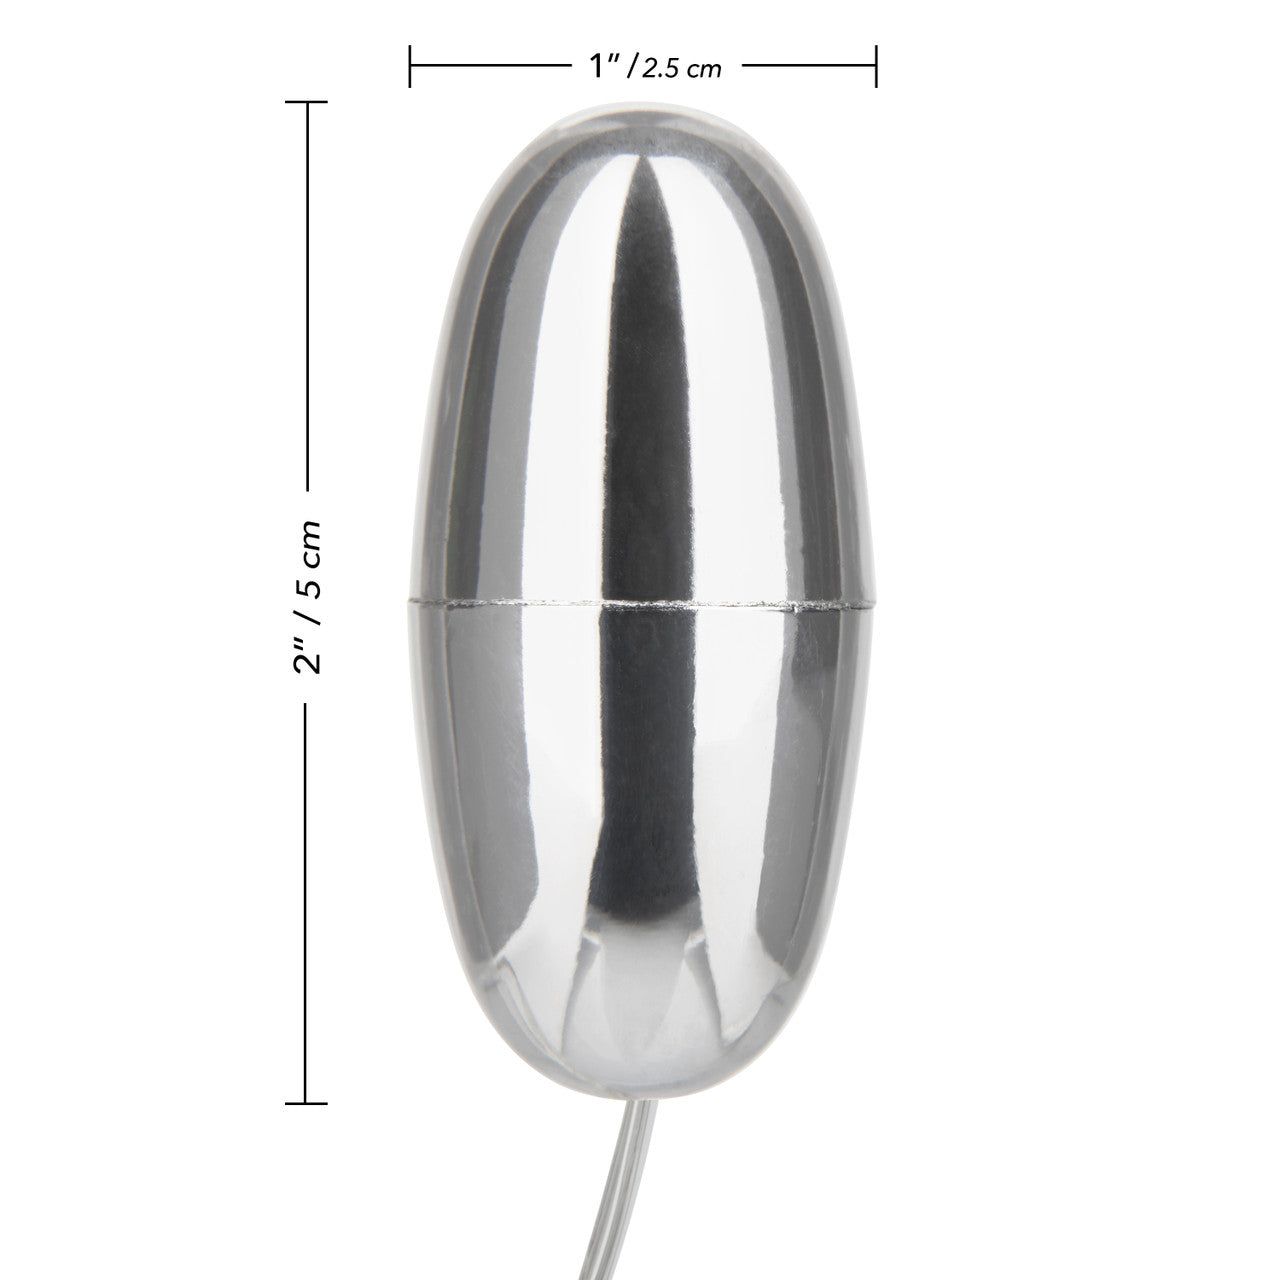 Slim Teardrop Bullet Vibrator